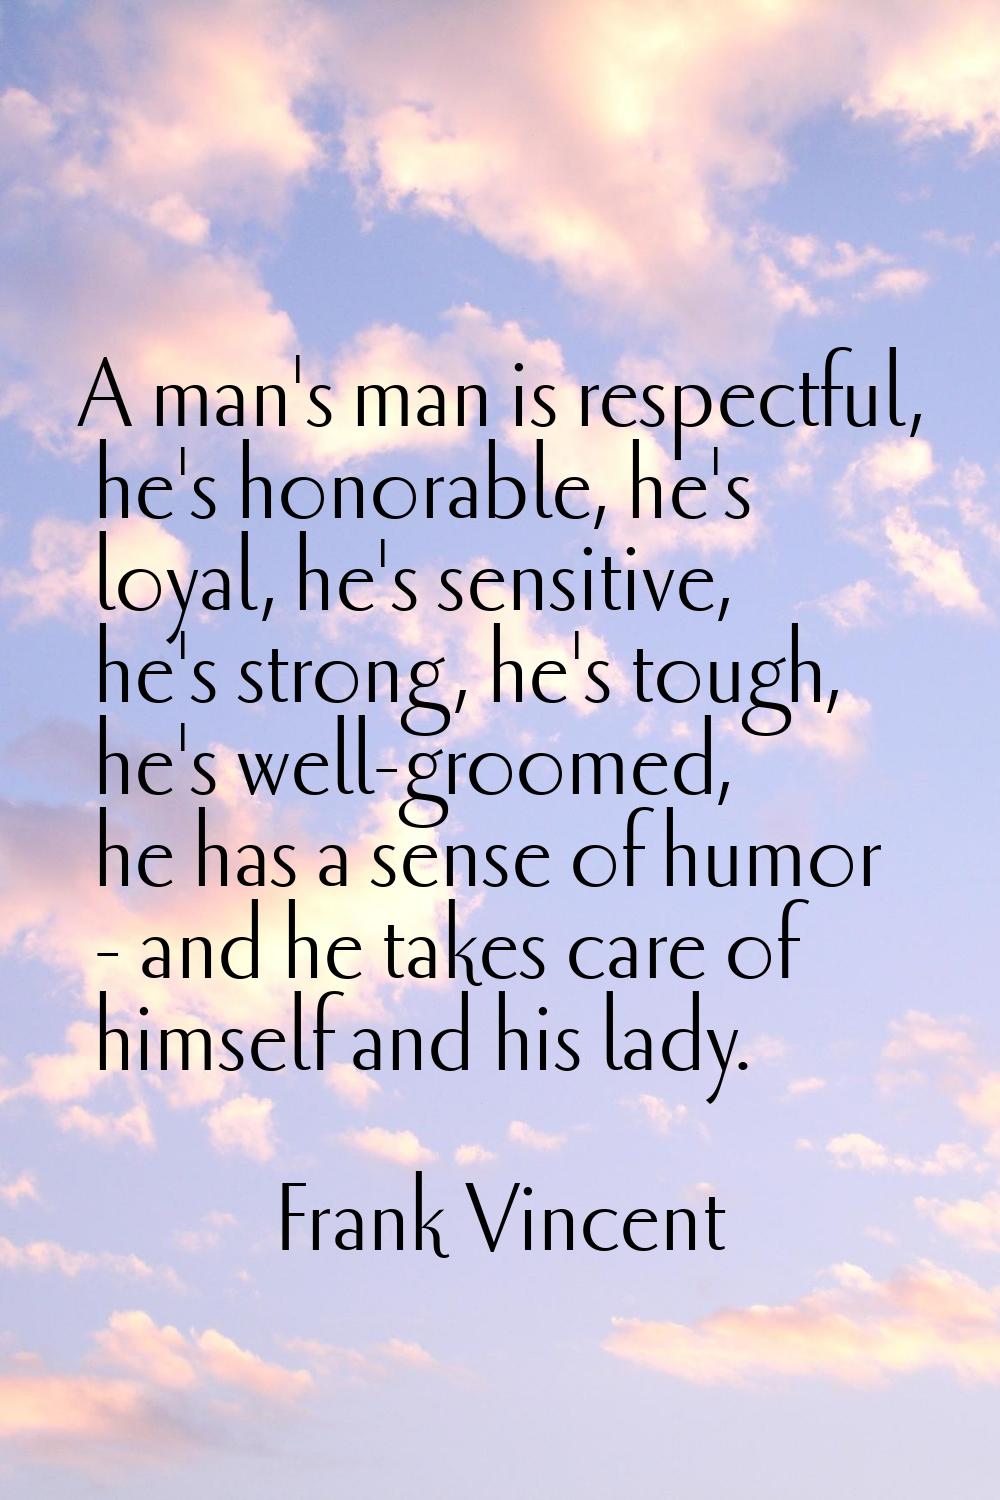 A man's man is respectful, he's honorable, he's loyal, he's sensitive, he's strong, he's tough, he'